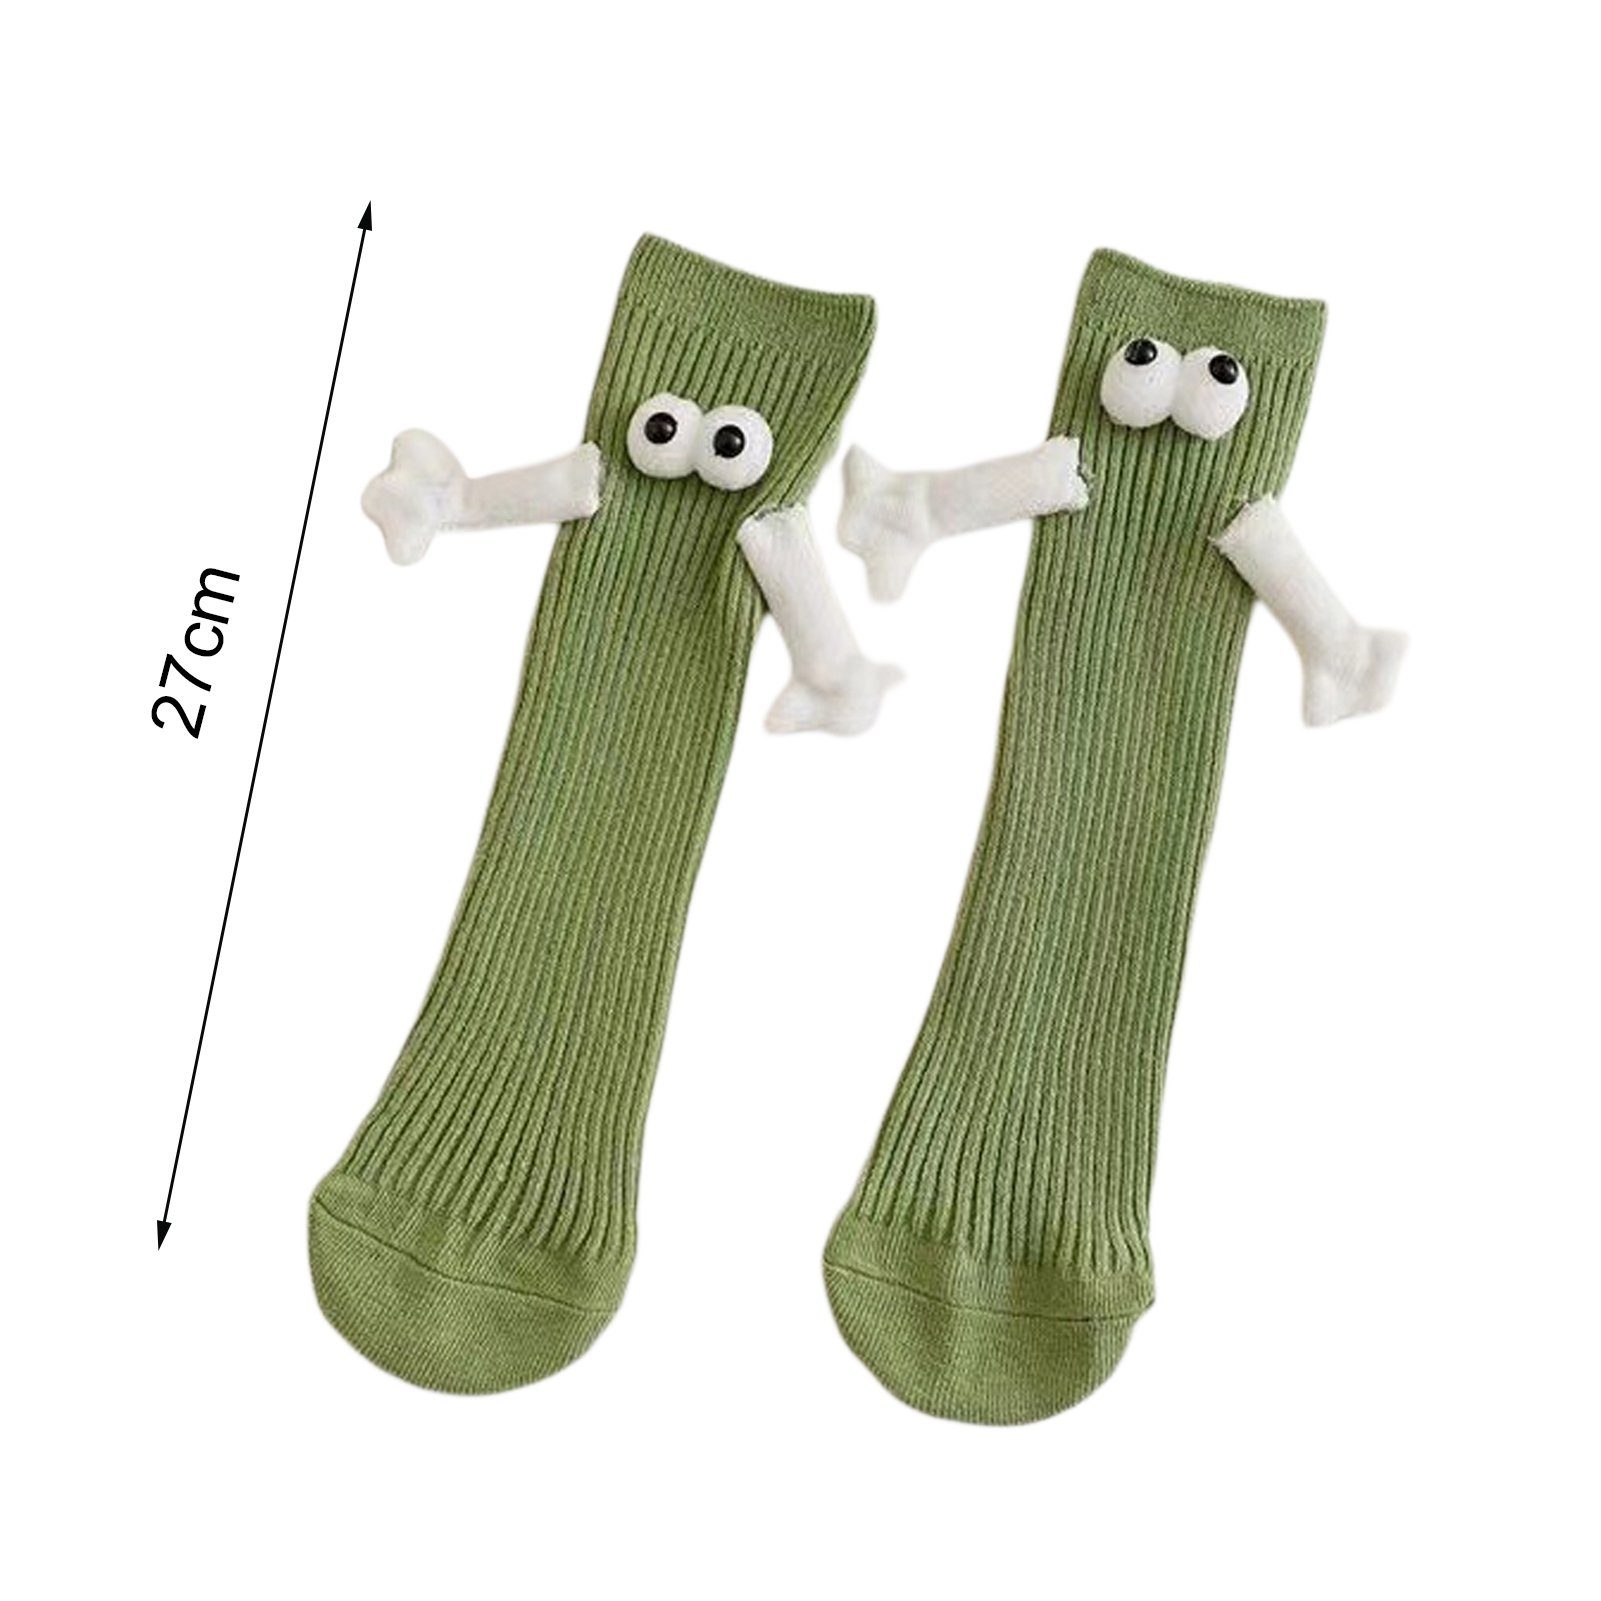 Rutaqian Gelb Trend-Persönlichkeit) 2 Socken Die und Paar Mit für Socken Paar-Händchenhalten-Socken, Händchen Unisex, Magneten, Saug-3D-Puppenaugen-Socke (Magnetische Halten Lustige Feinsocken